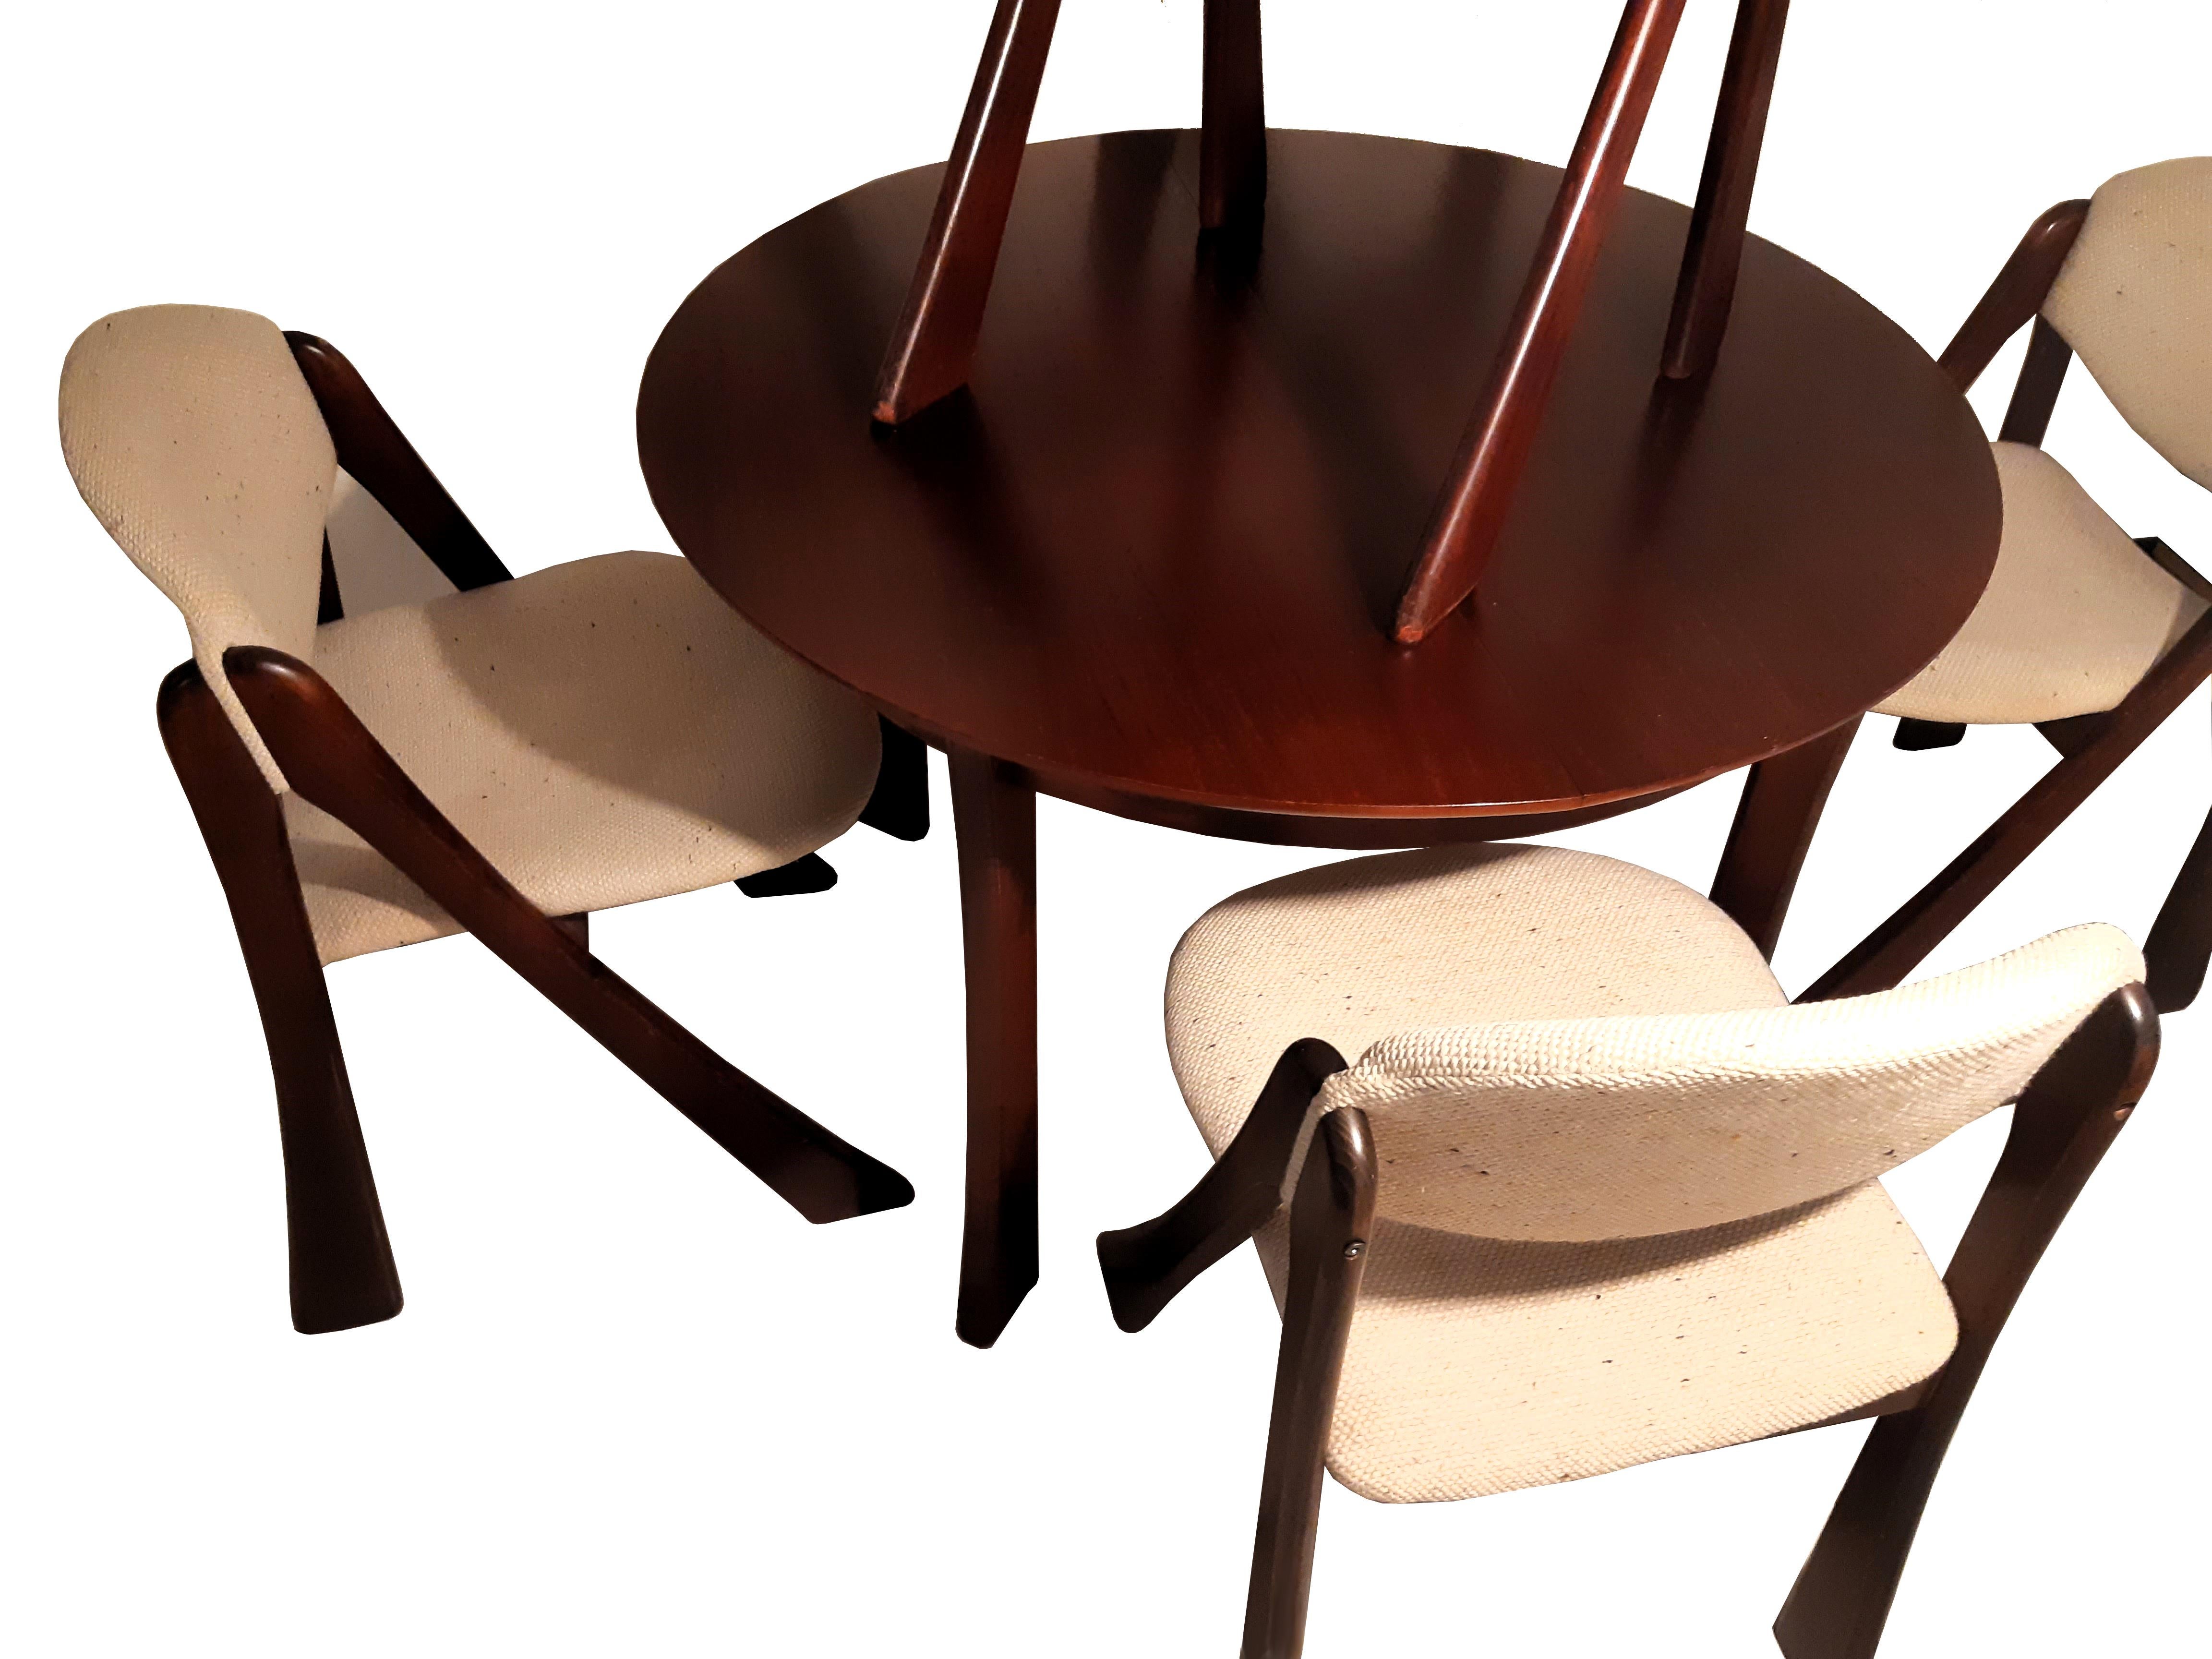 Ausziehbarer Esstisch mit gefalteter Einlegeplatte, dazugehörig 4 Stühle mit originalem Bouclé-Bezug.

Sehr guter originaler Erhaltungszustand, die Stühle mit leichten gebrauchsspuren im Fußbereich, der Tisch ohne Beschädigungen, Kratzern,